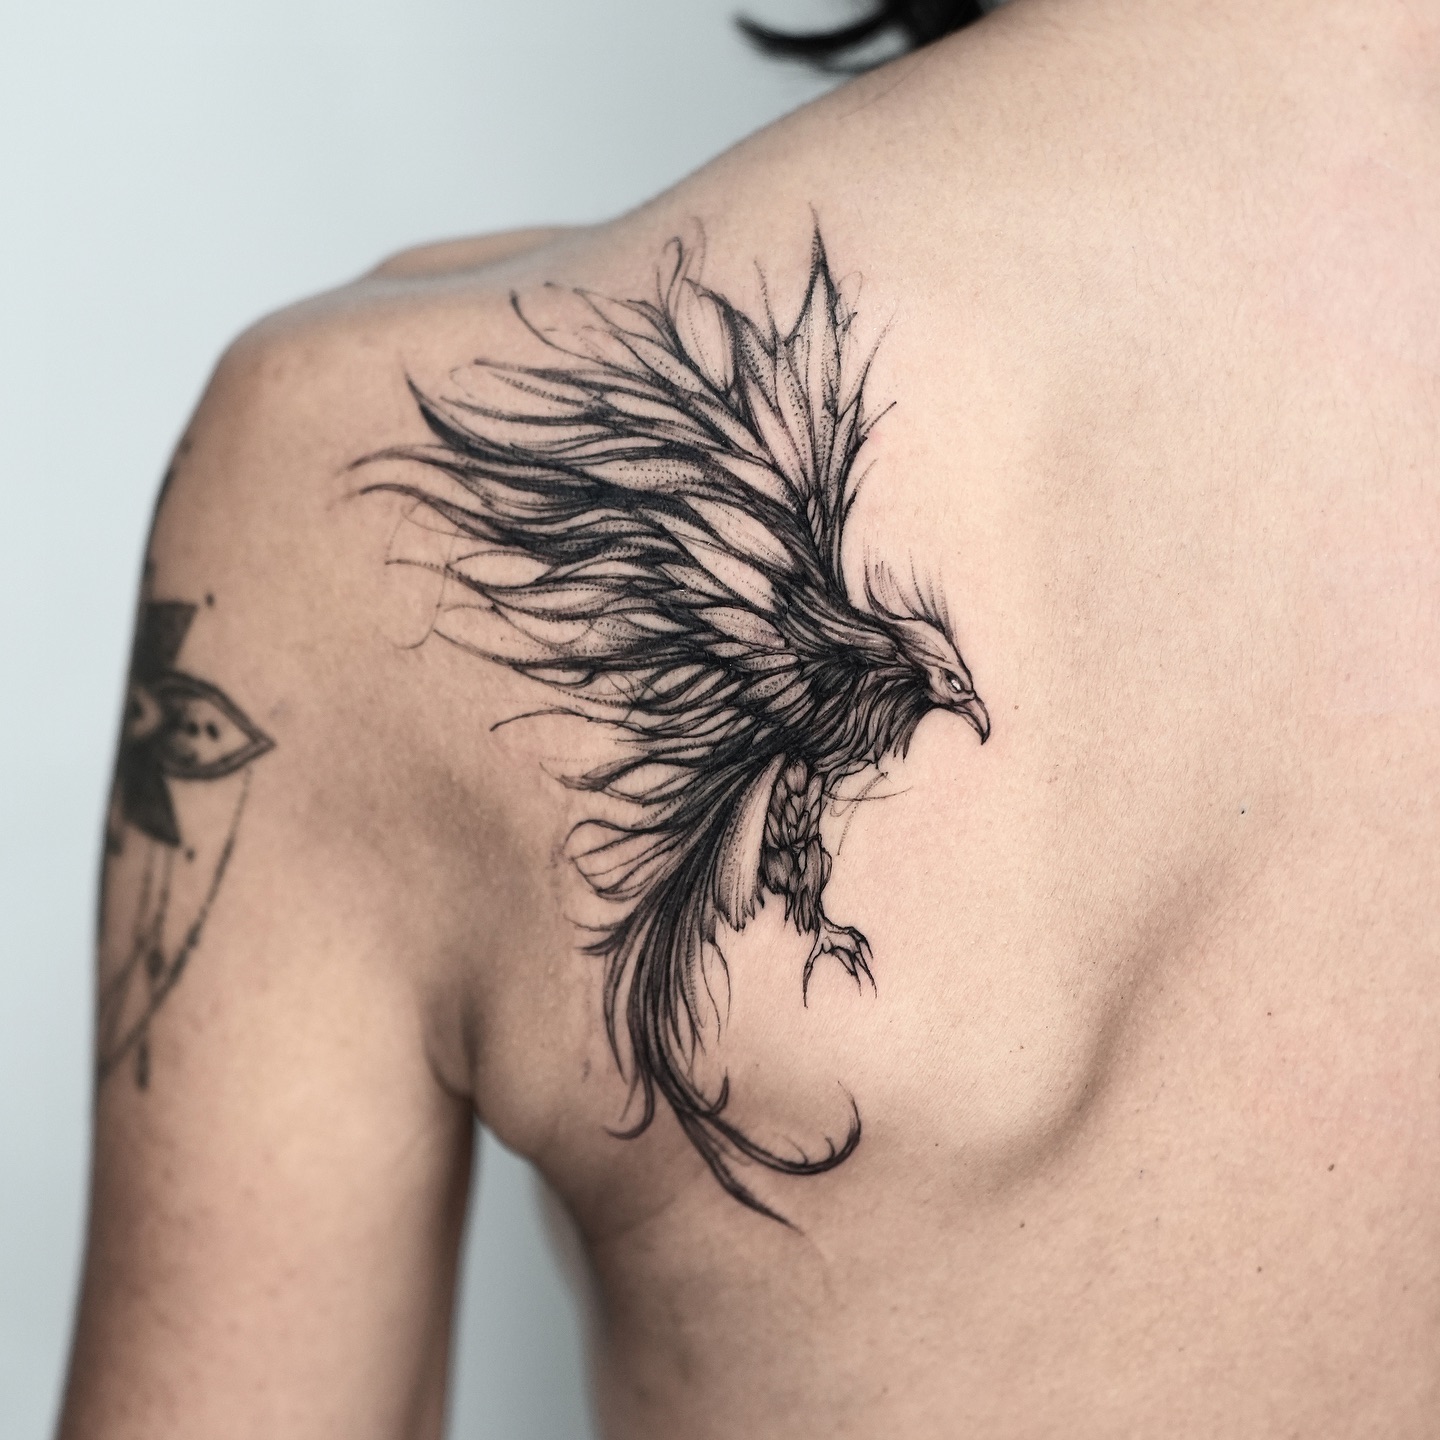 Phoenix tattoo for men by timor tt